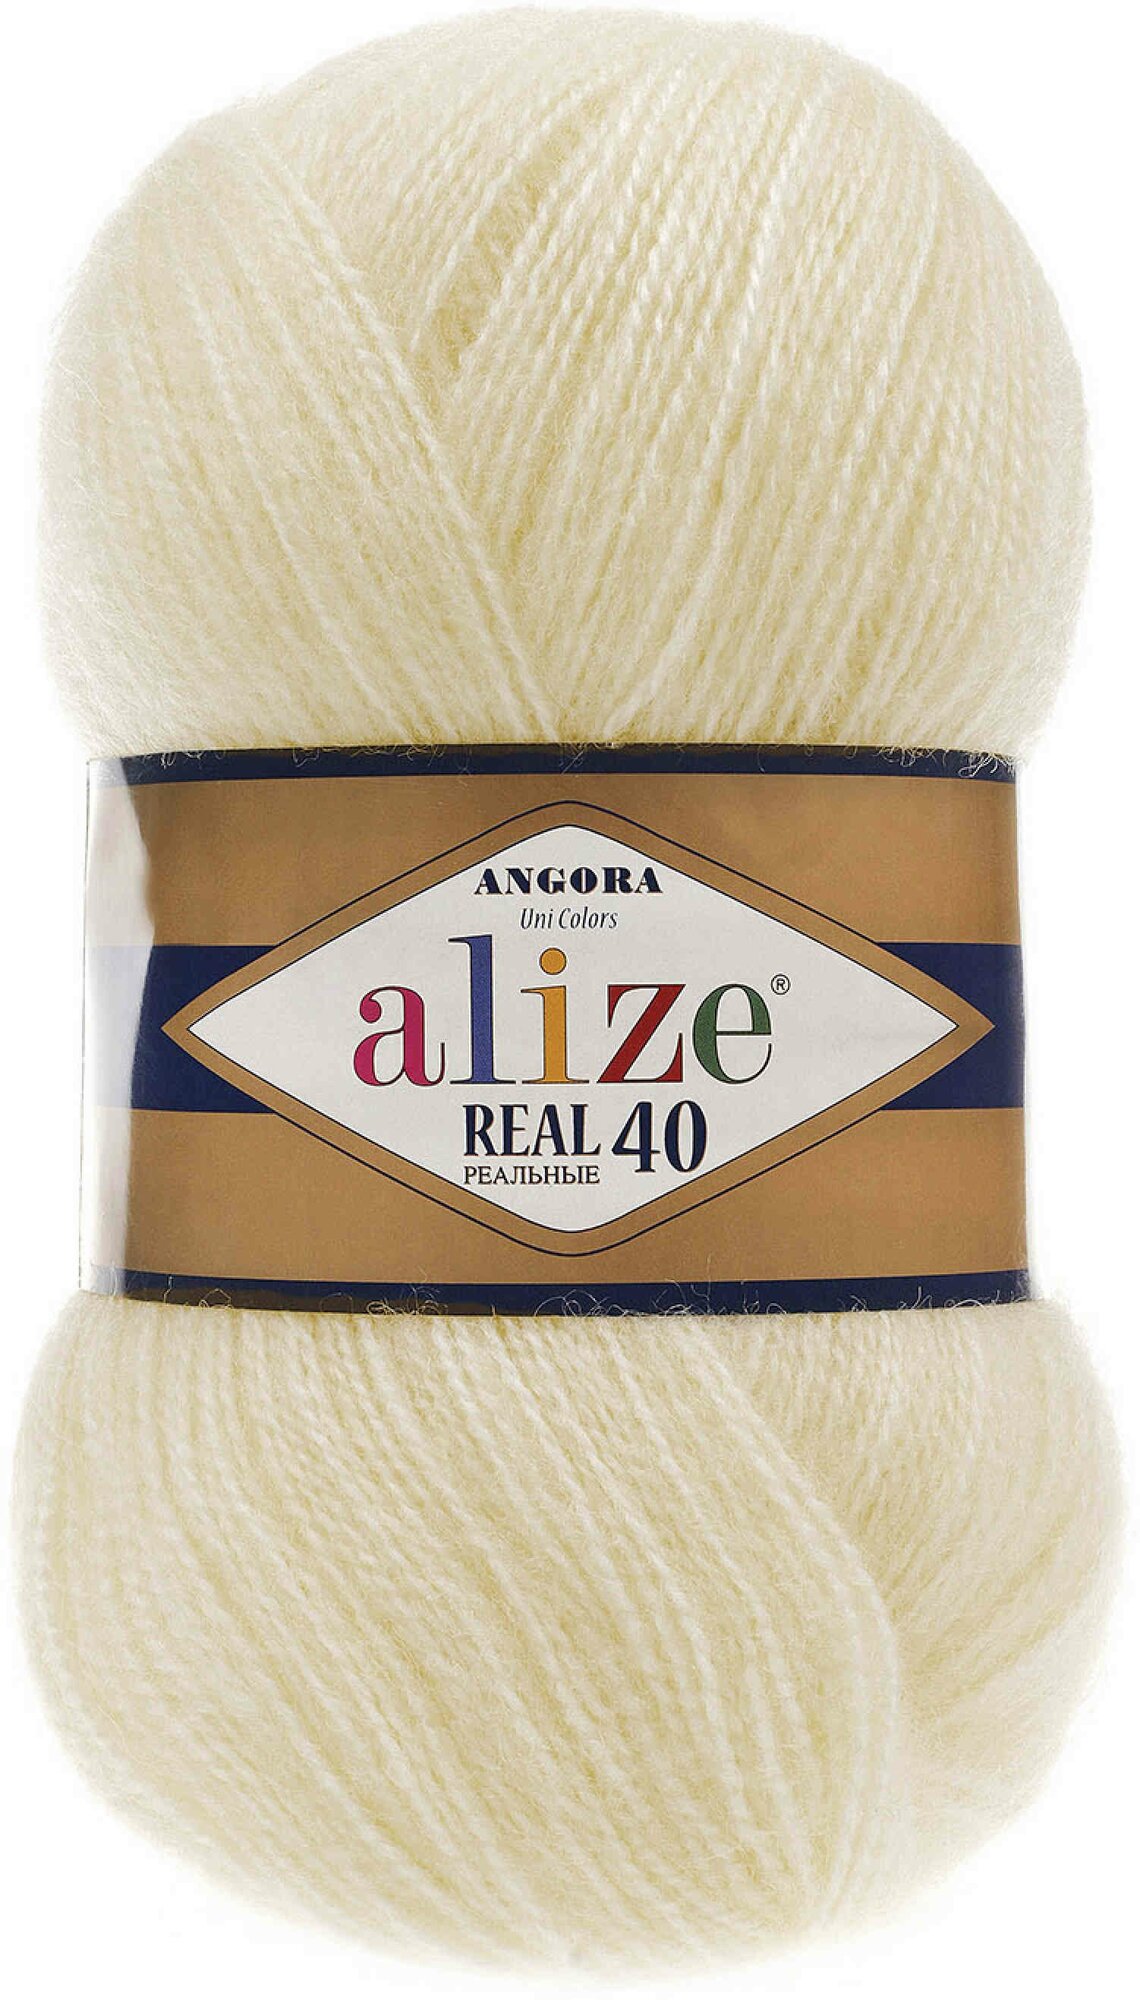 Пряжа Alize Angora Real 40 кремовый (1), 60%акрил/40%шерсть, 430м, 100г, 1шт